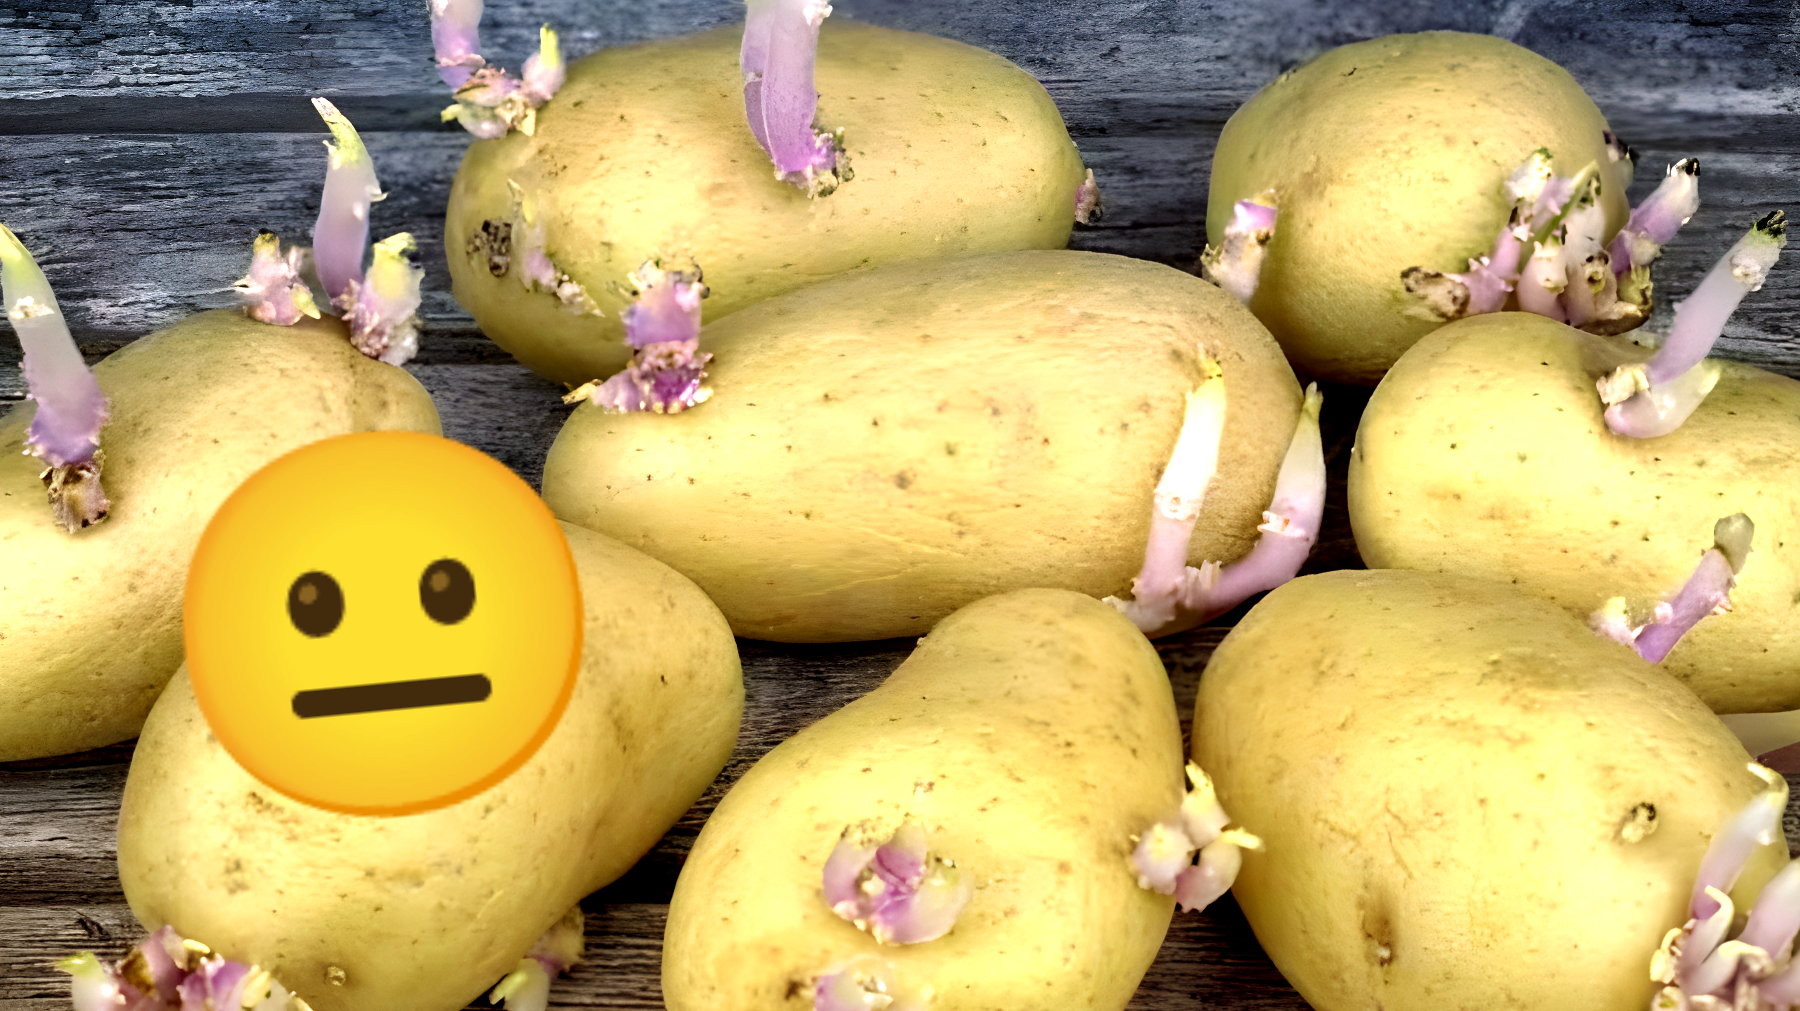 La verità sulle patate germogliate: possono essere mangiate o sono pericolose?